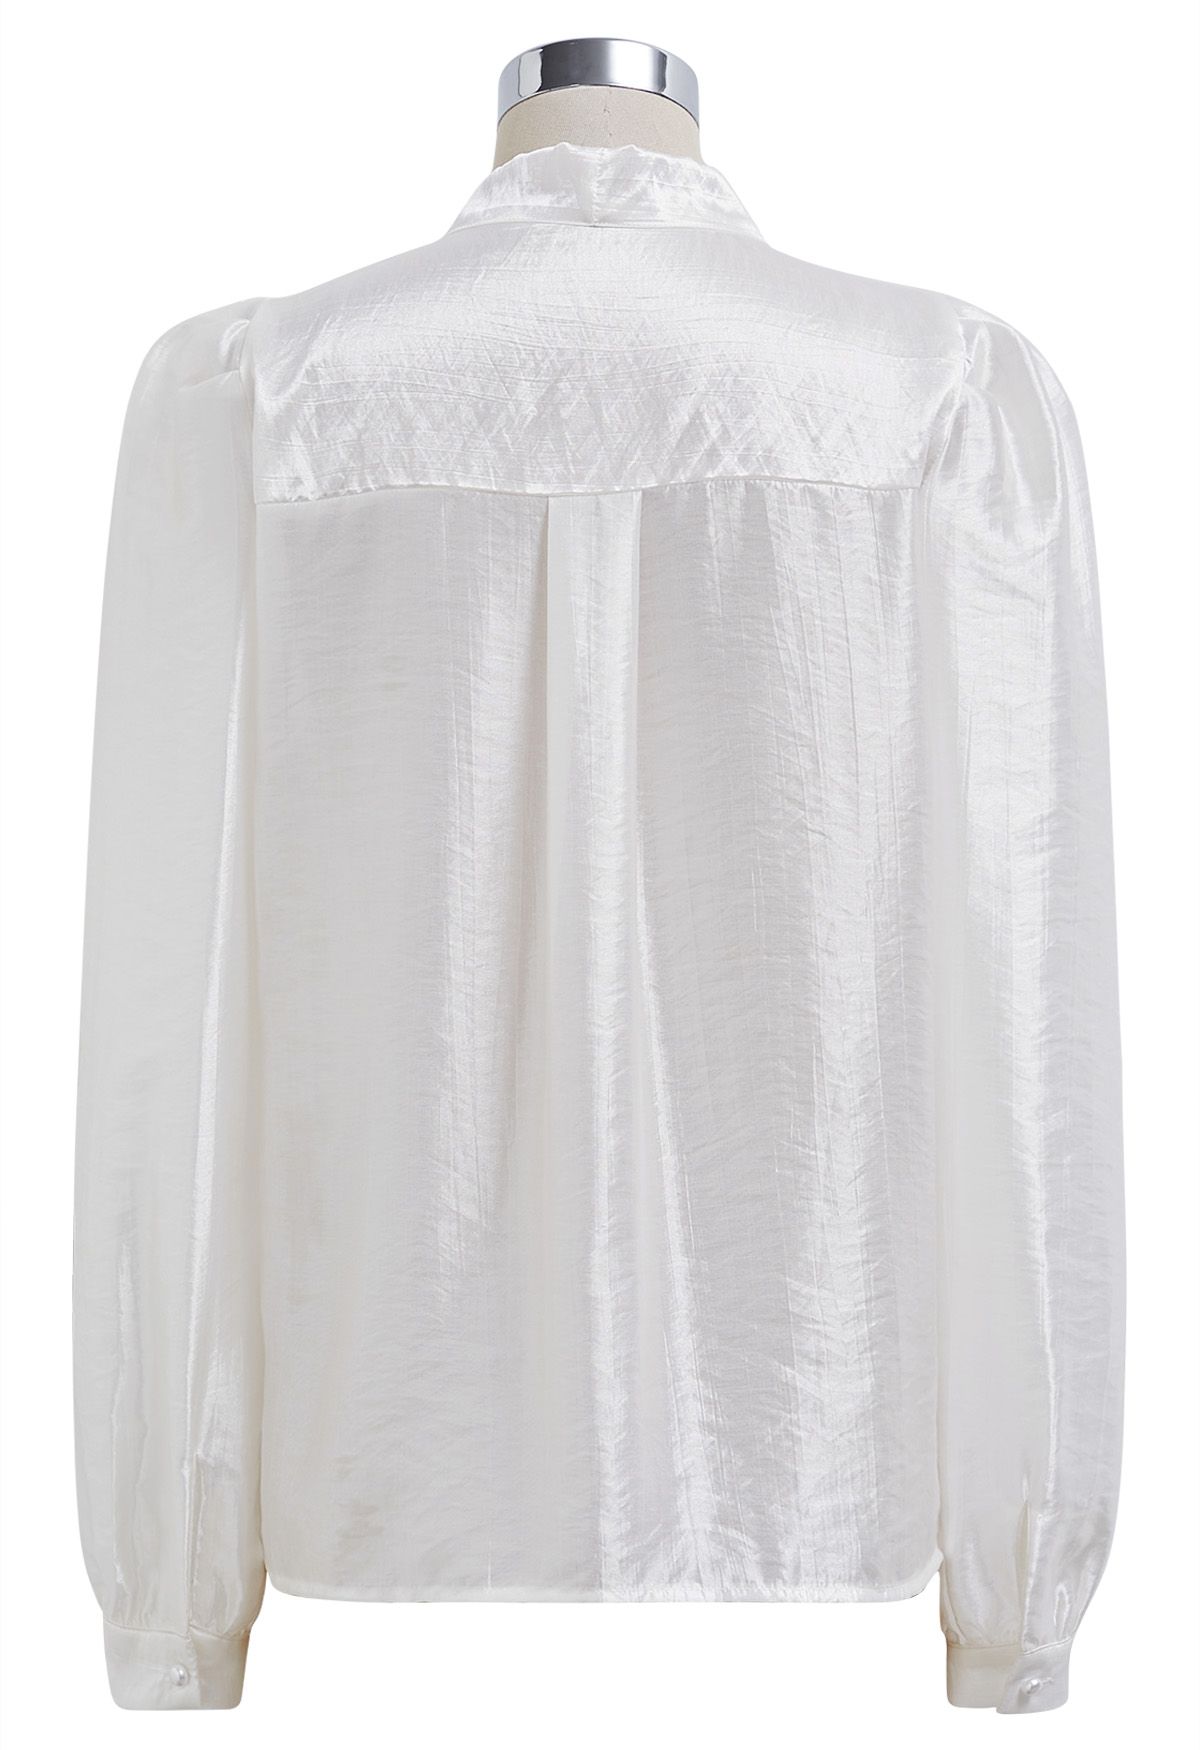 قميص من الساتان بعقدة عنق ذاتية الربط باللون الأبيض